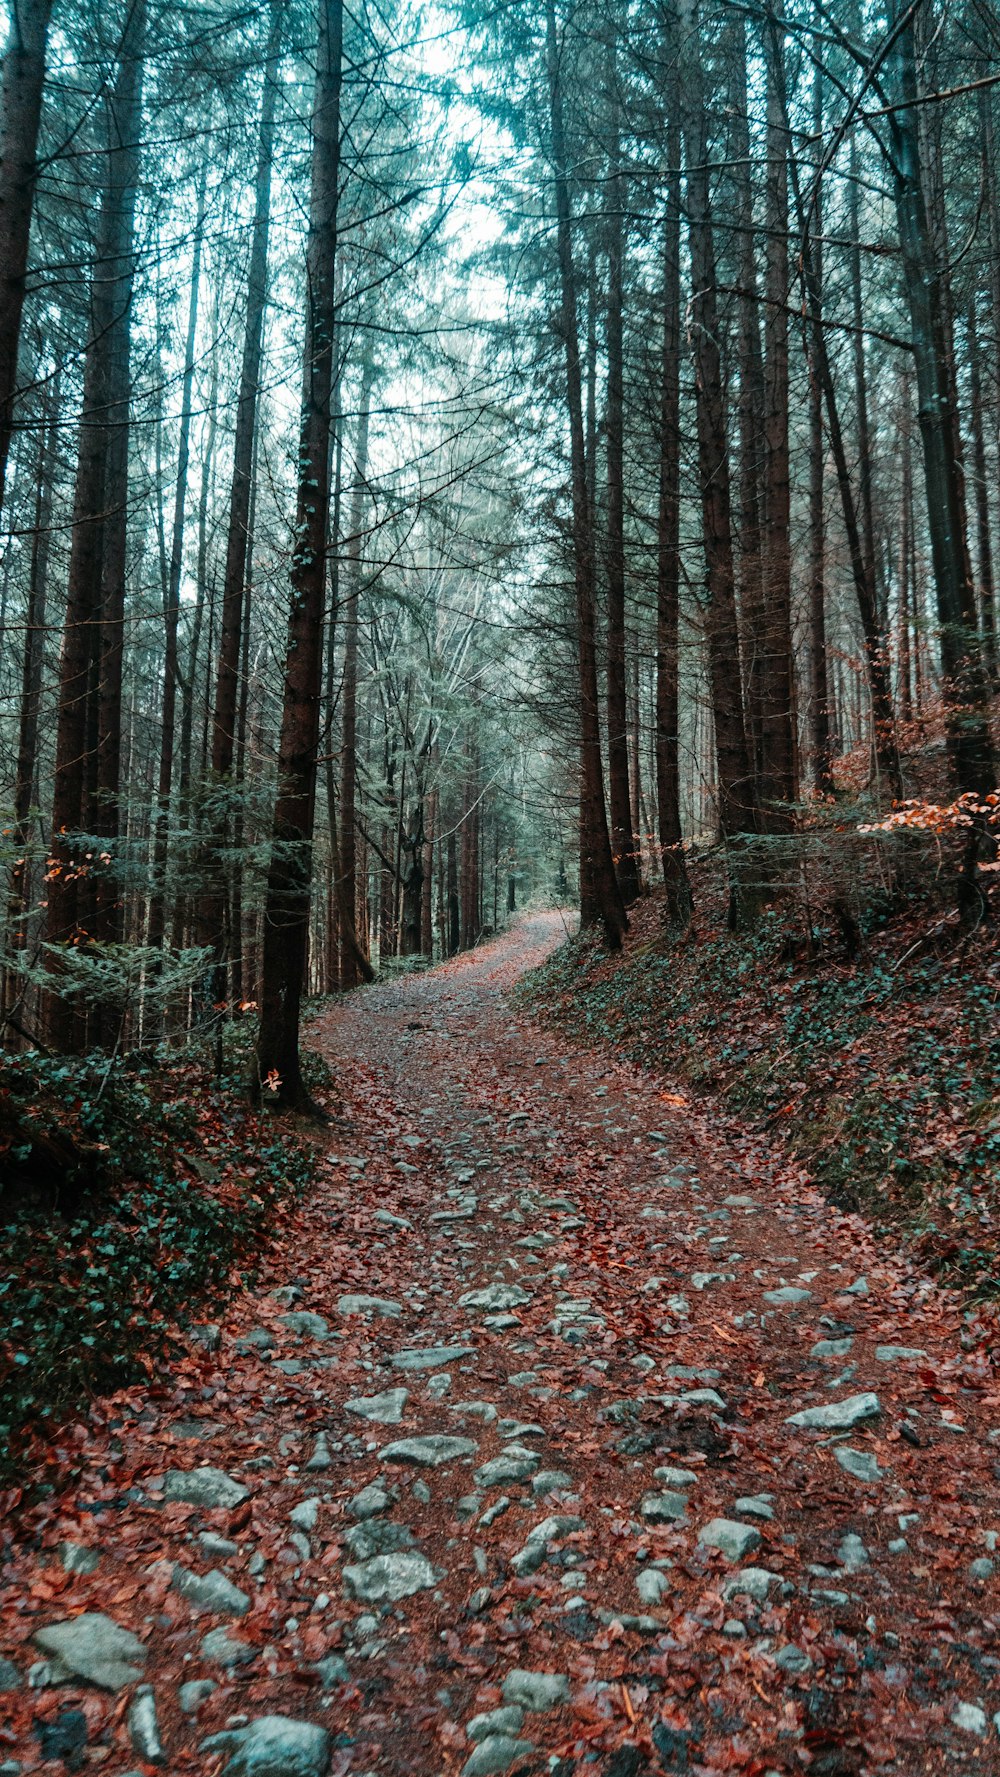 estrada coberta de folhas caídas cercada por árvores